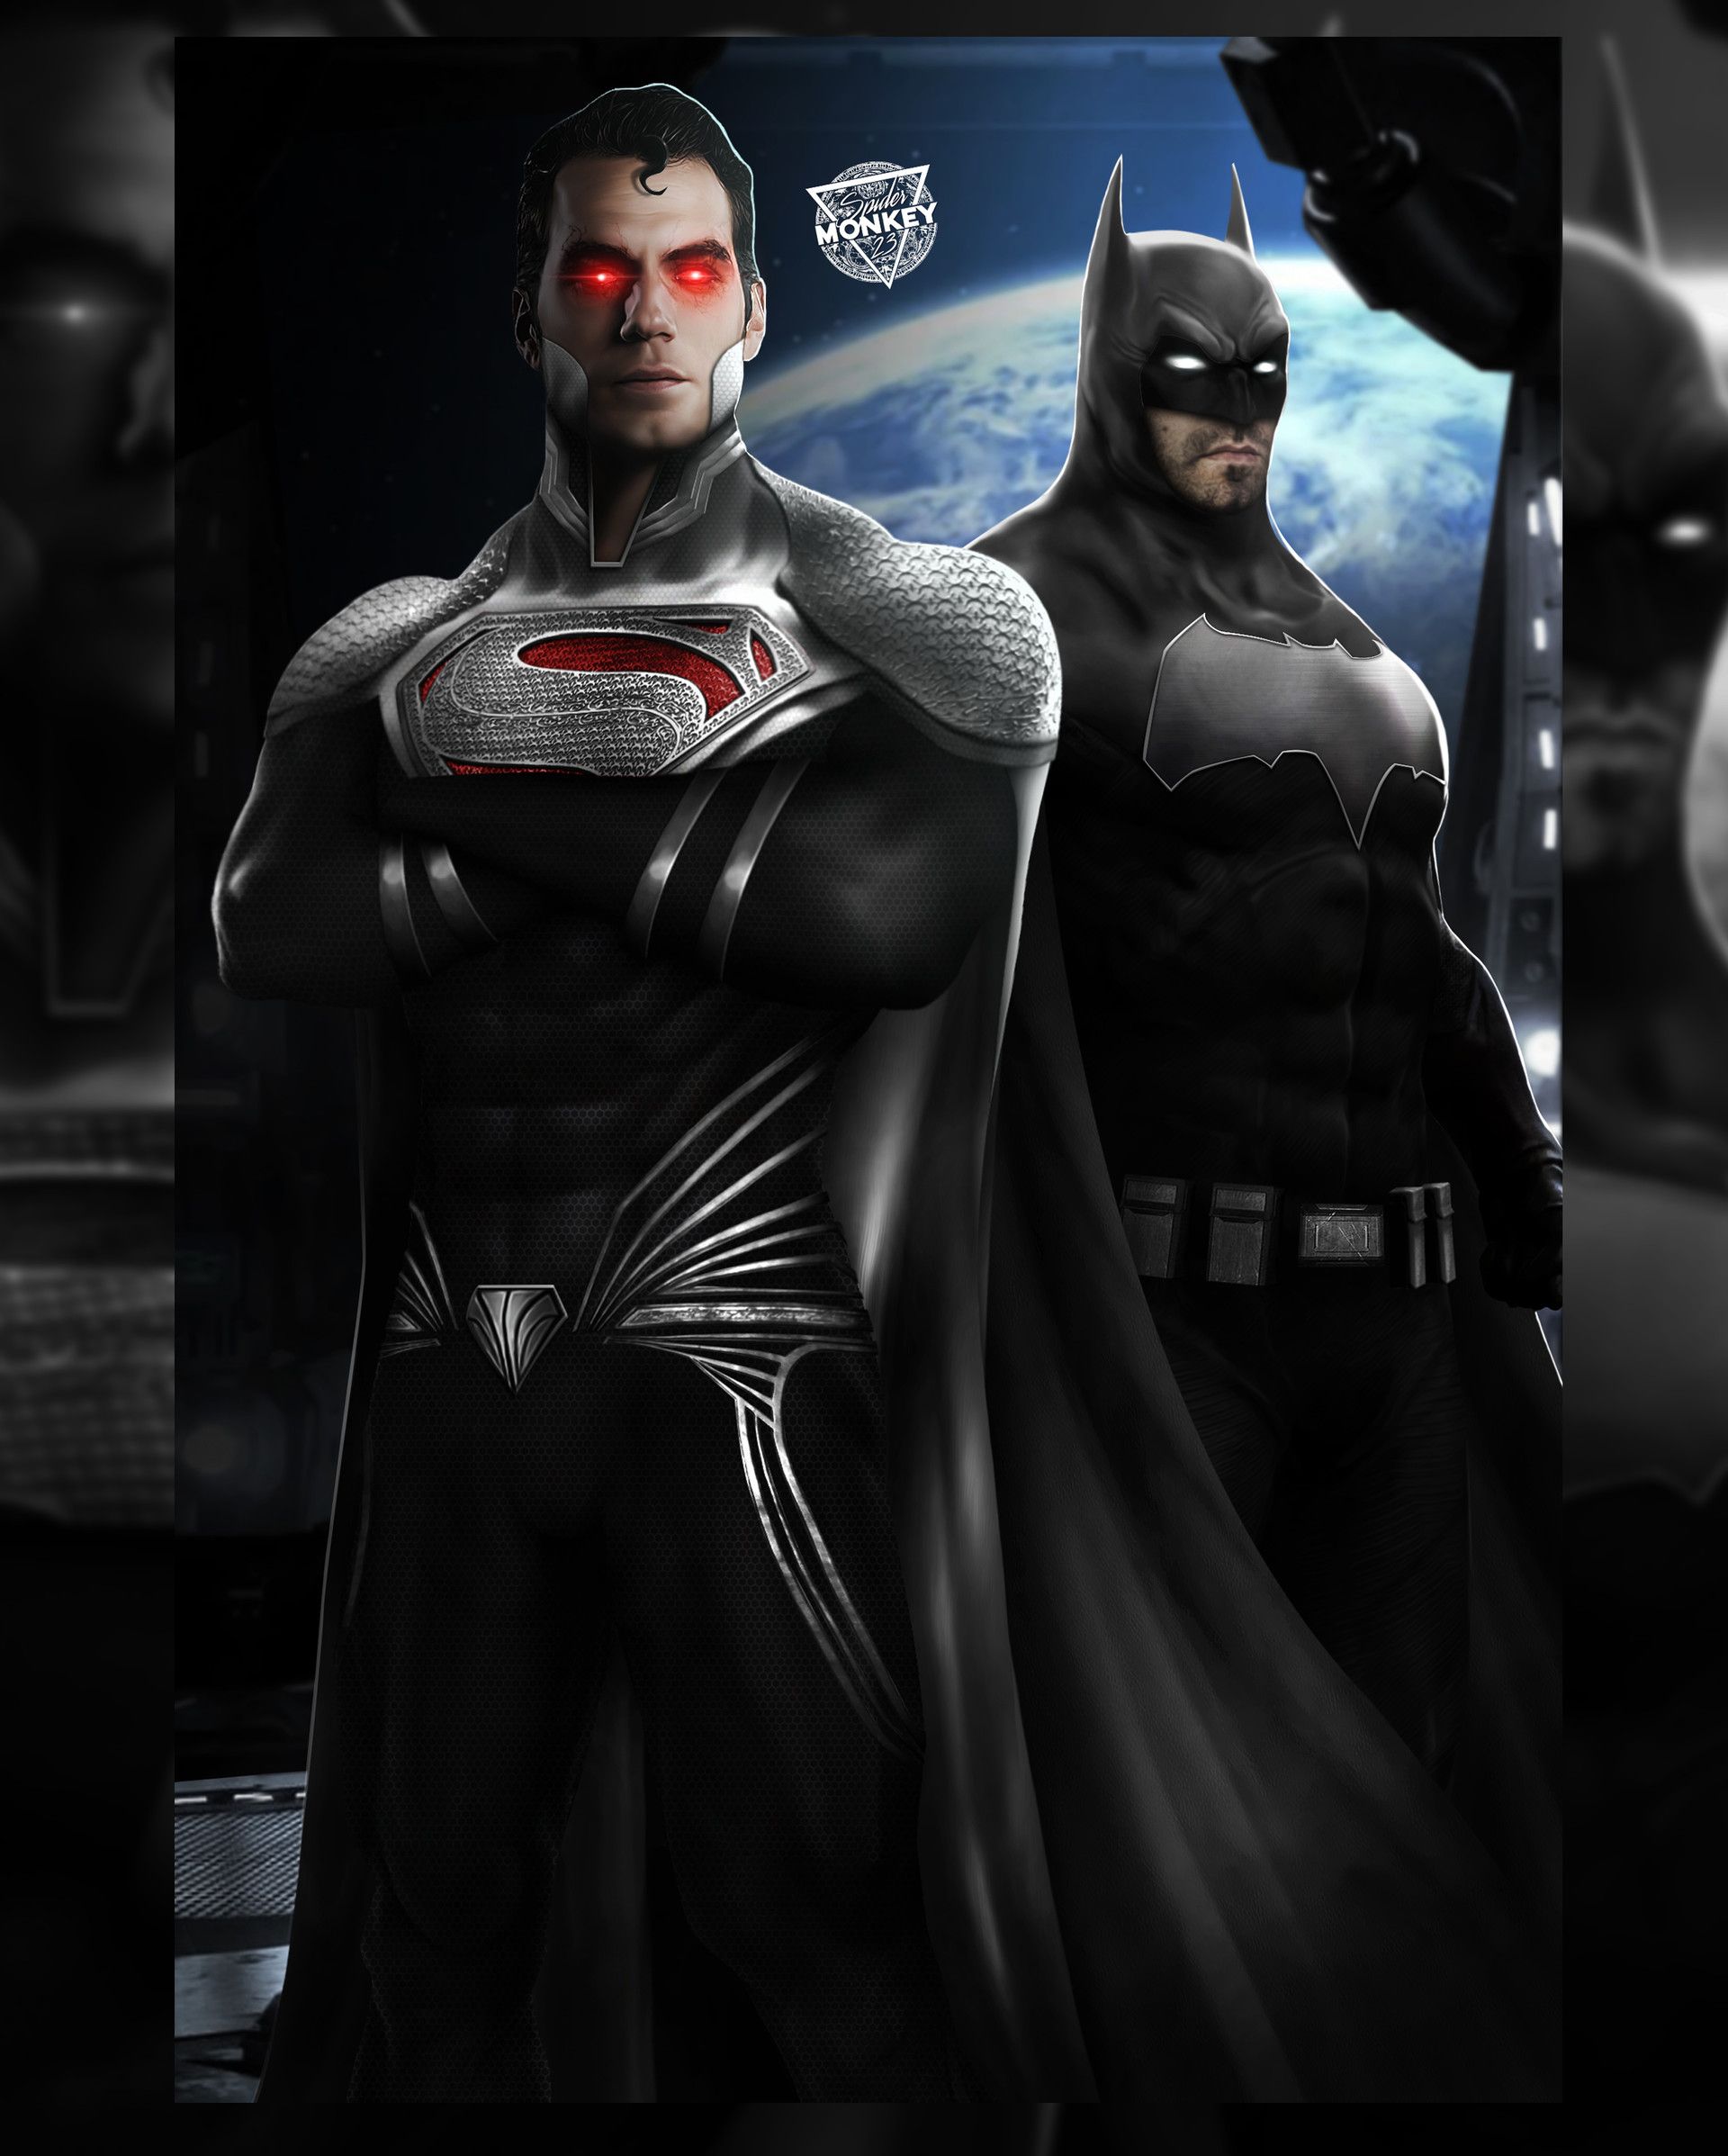 Justice Lords Worlds Finest, SPDRMNKY XXIII. Superman art, Batman vs superman, Dc comics superman